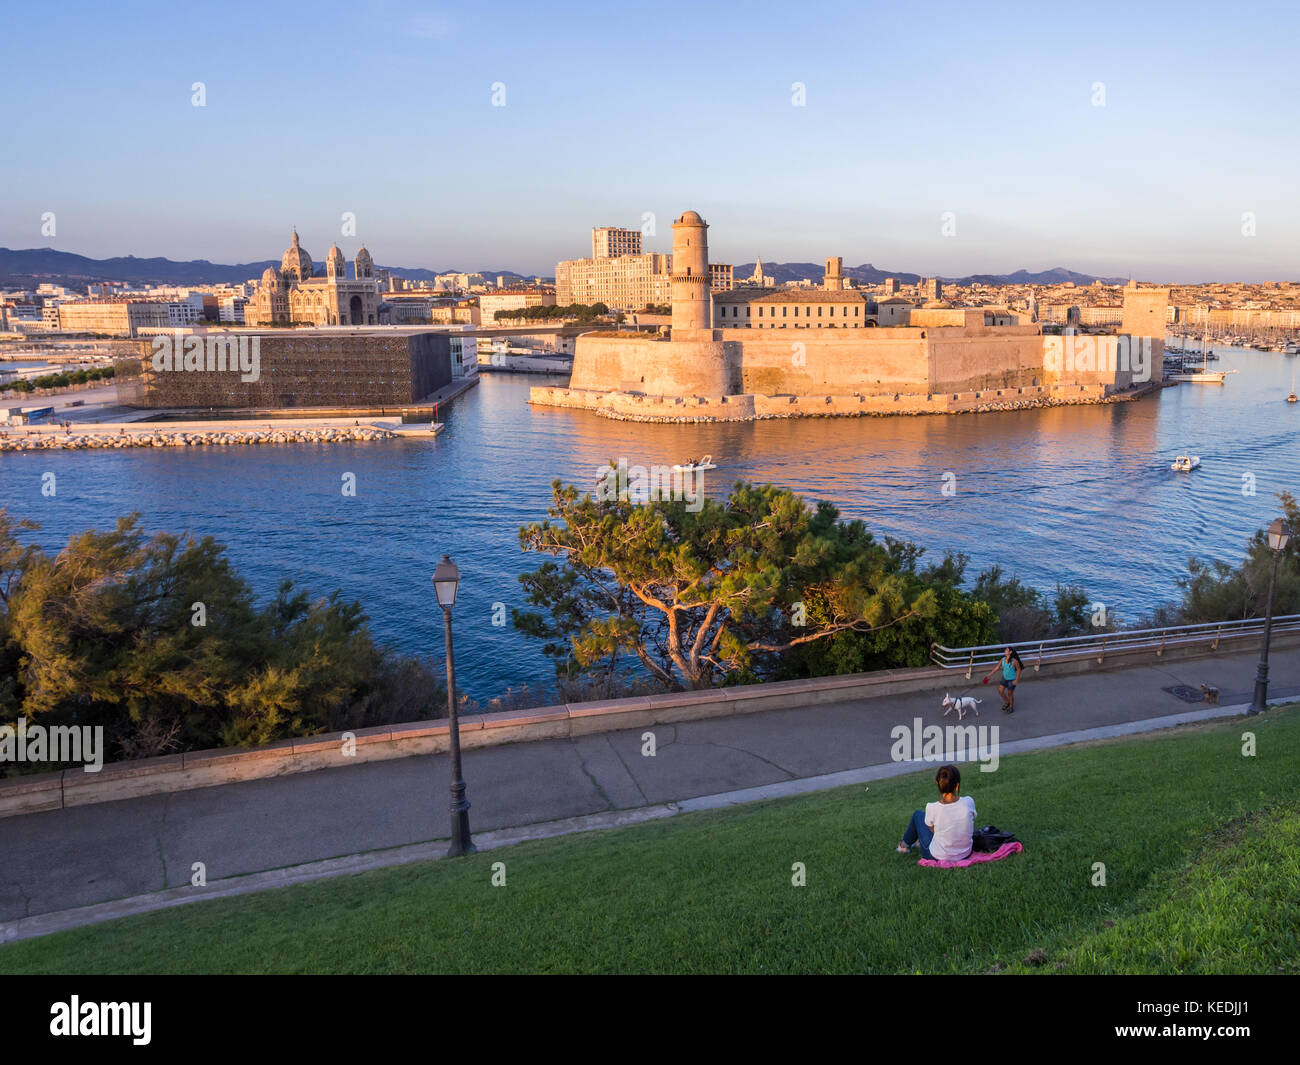 Marsella, Francia - Agosto 07, 2017: la catedral y el castillo de Saint Jean de la mayor y el Vieux Port, en Marsella, Francia, como se ve desde el Palais du p Foto de stock